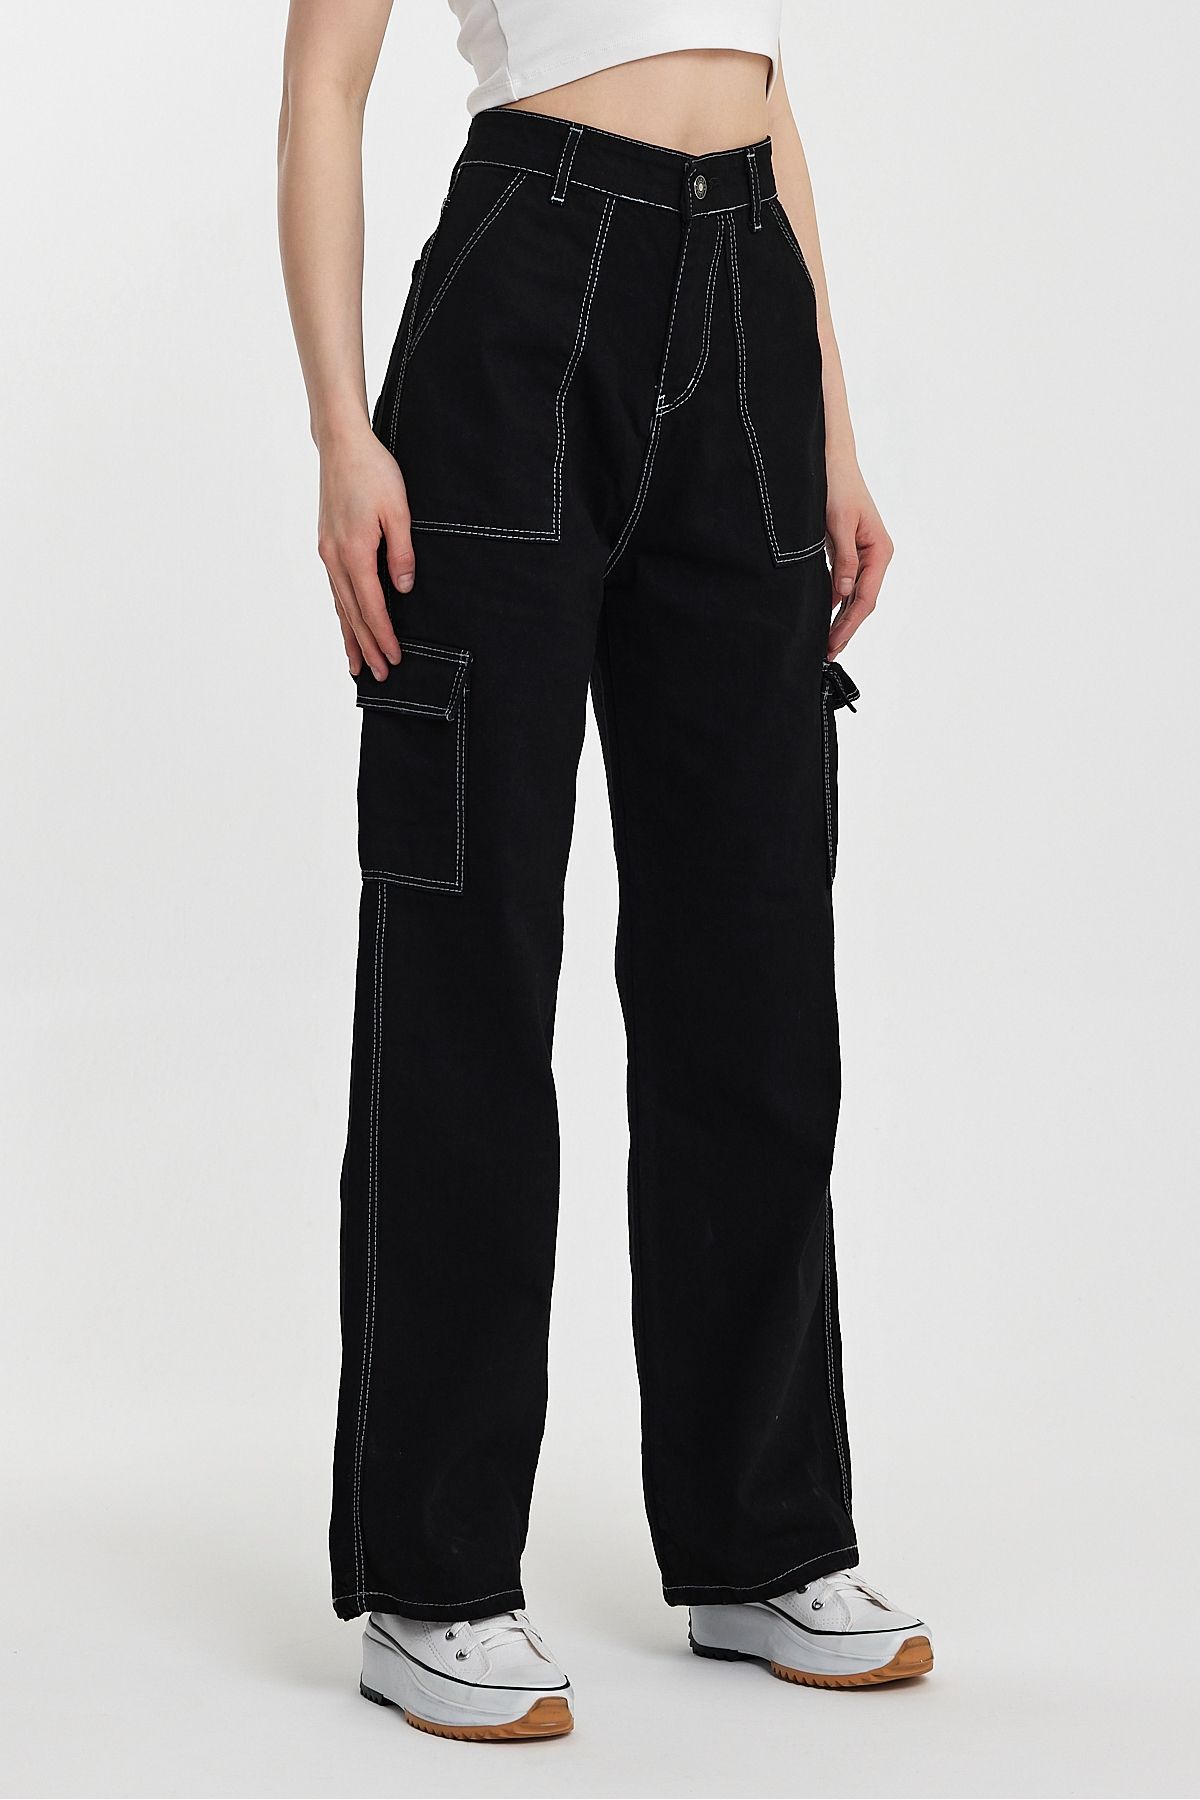 Penyelux Kadın Jean Modası Oversize Rahat Baggy Kargo Cepli Pantolon